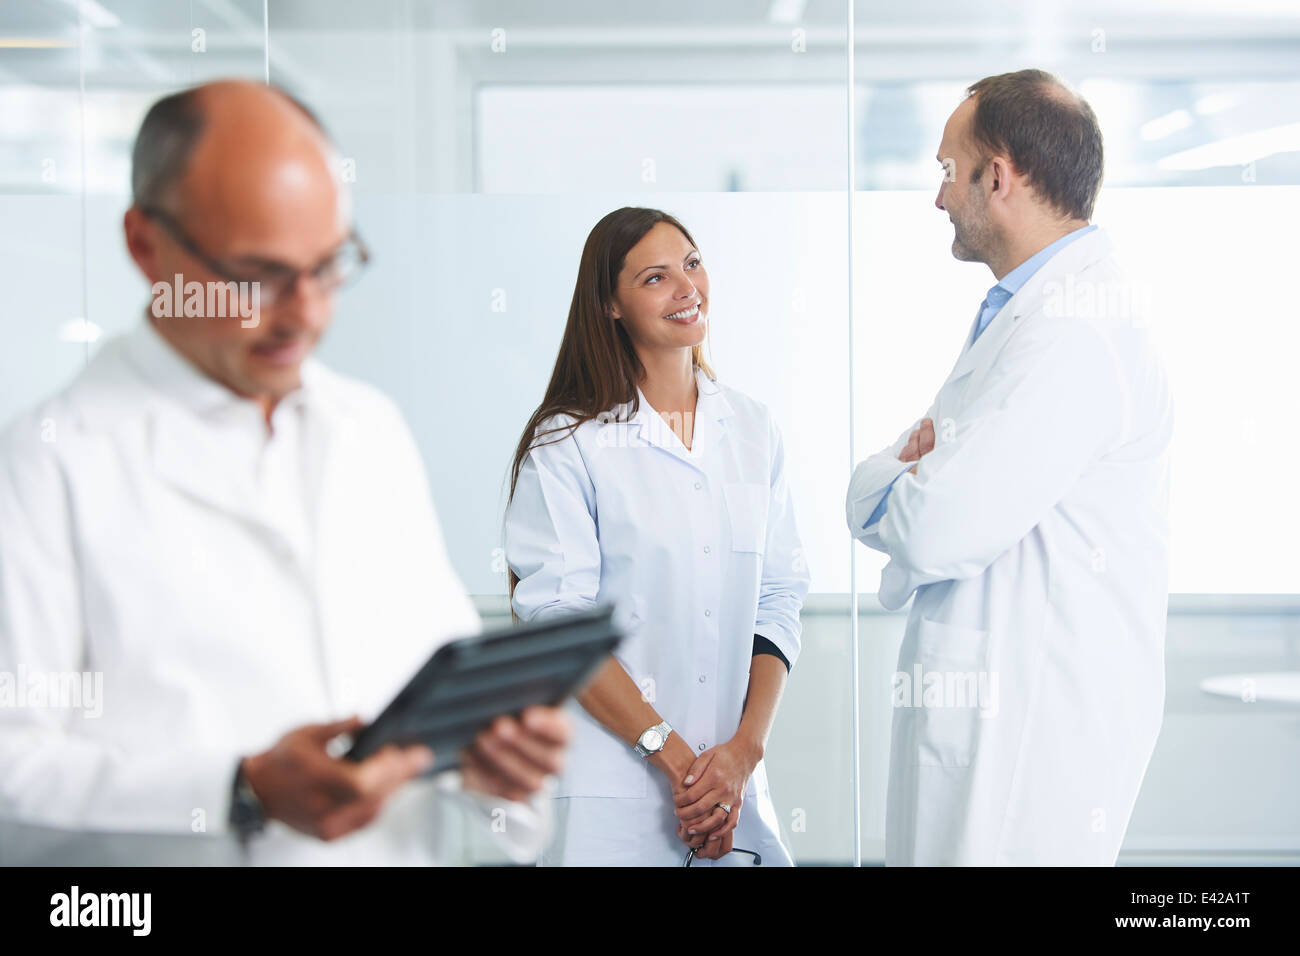 Männlichen Arzt mit digital-Tablette, Kolleginnen und Kollegen im Hintergrund Stockfoto